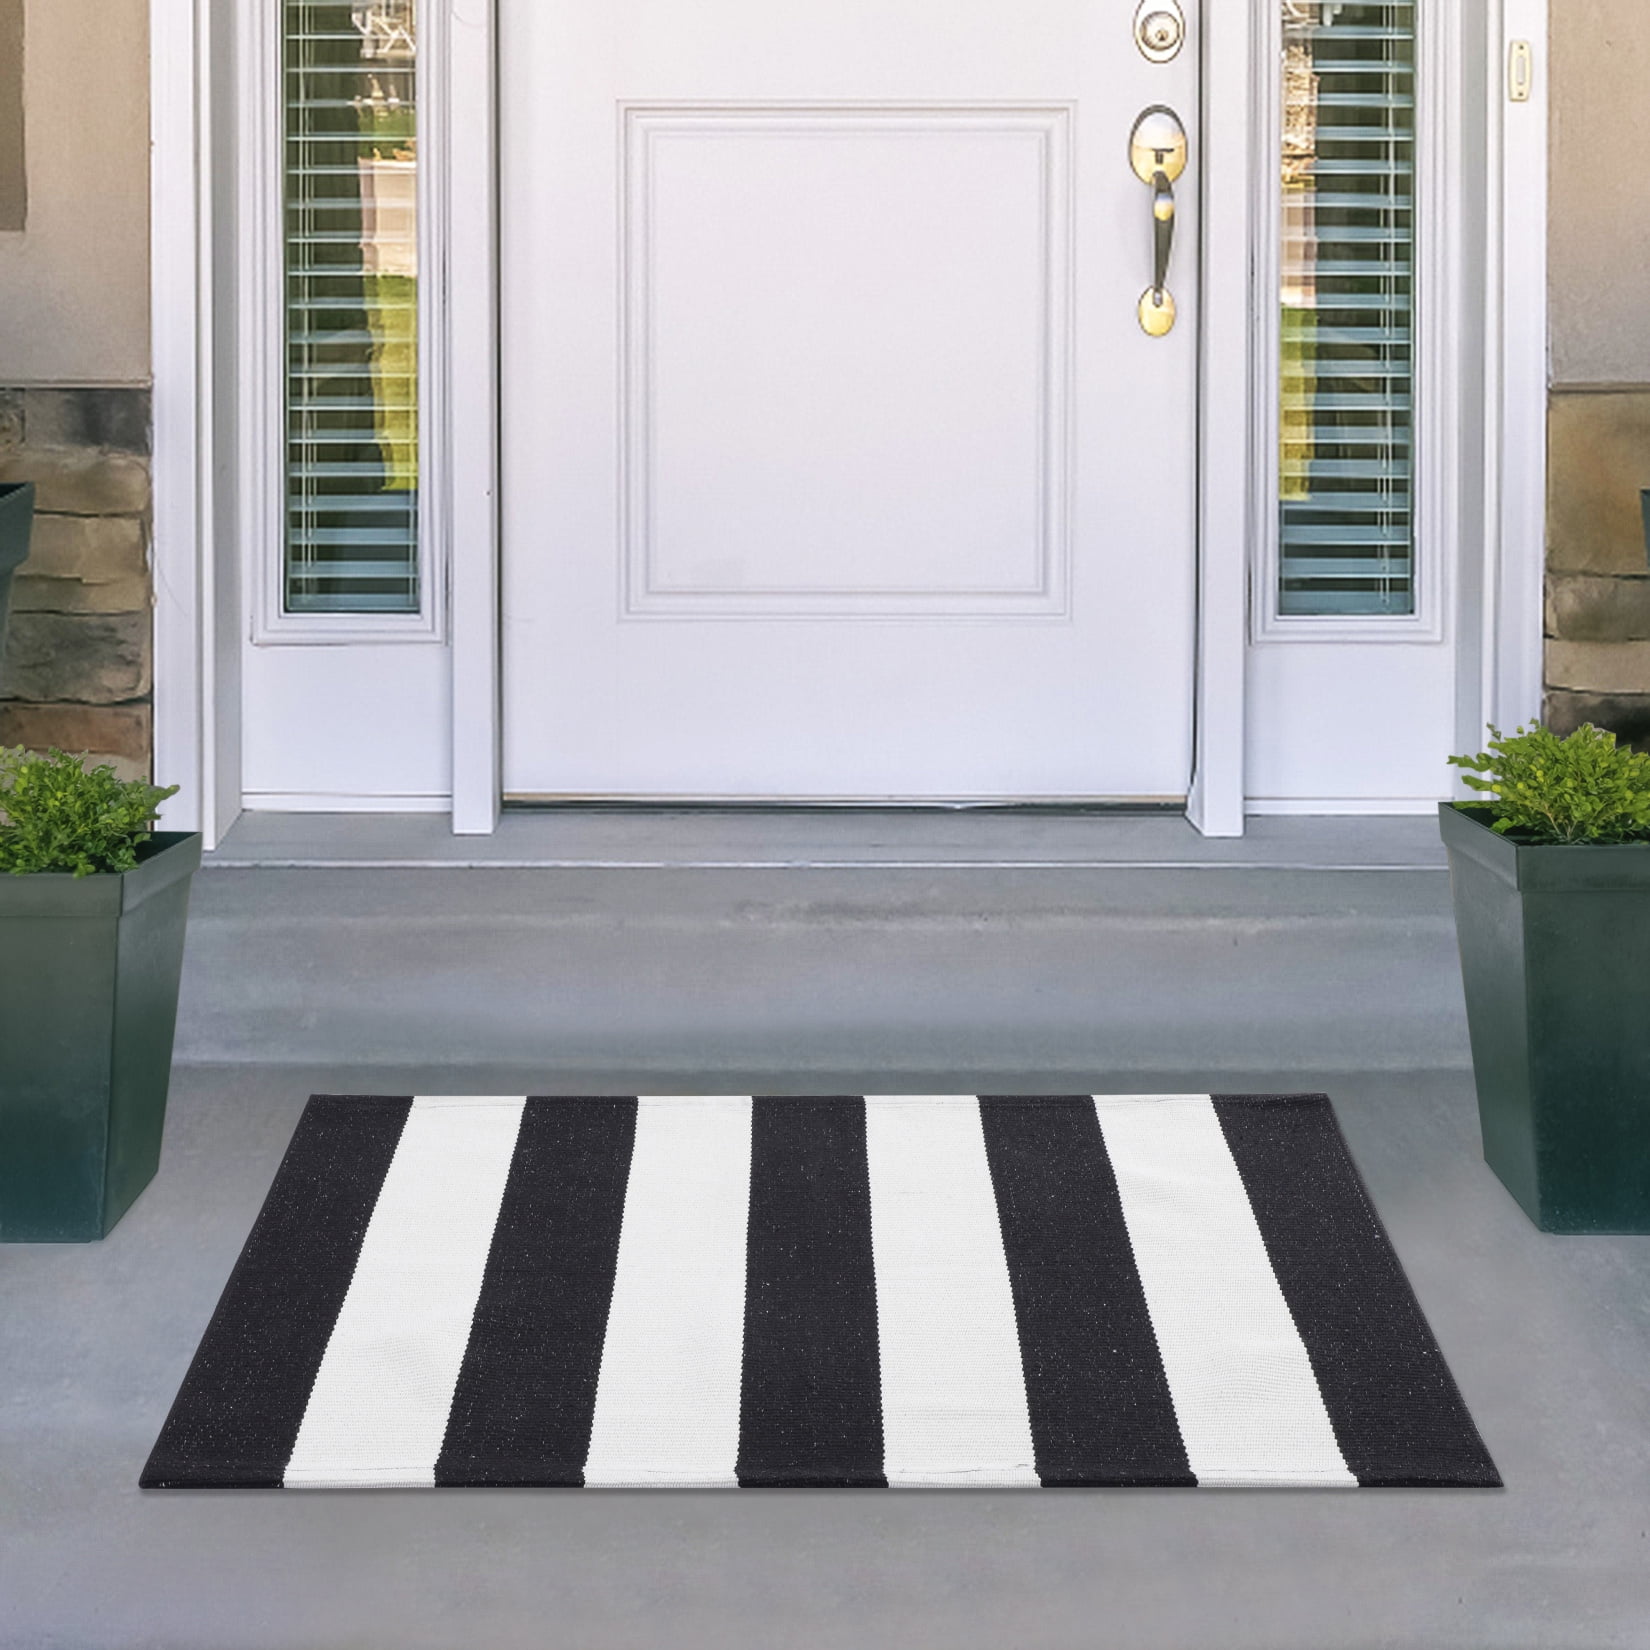 Breezsisan Outdoor Front Door Porch Rug 2x4.3 ft Front Door Rugs Stripe  Black White Layering Under Door Mats Rugs. Cotton Woven Checkered Runner